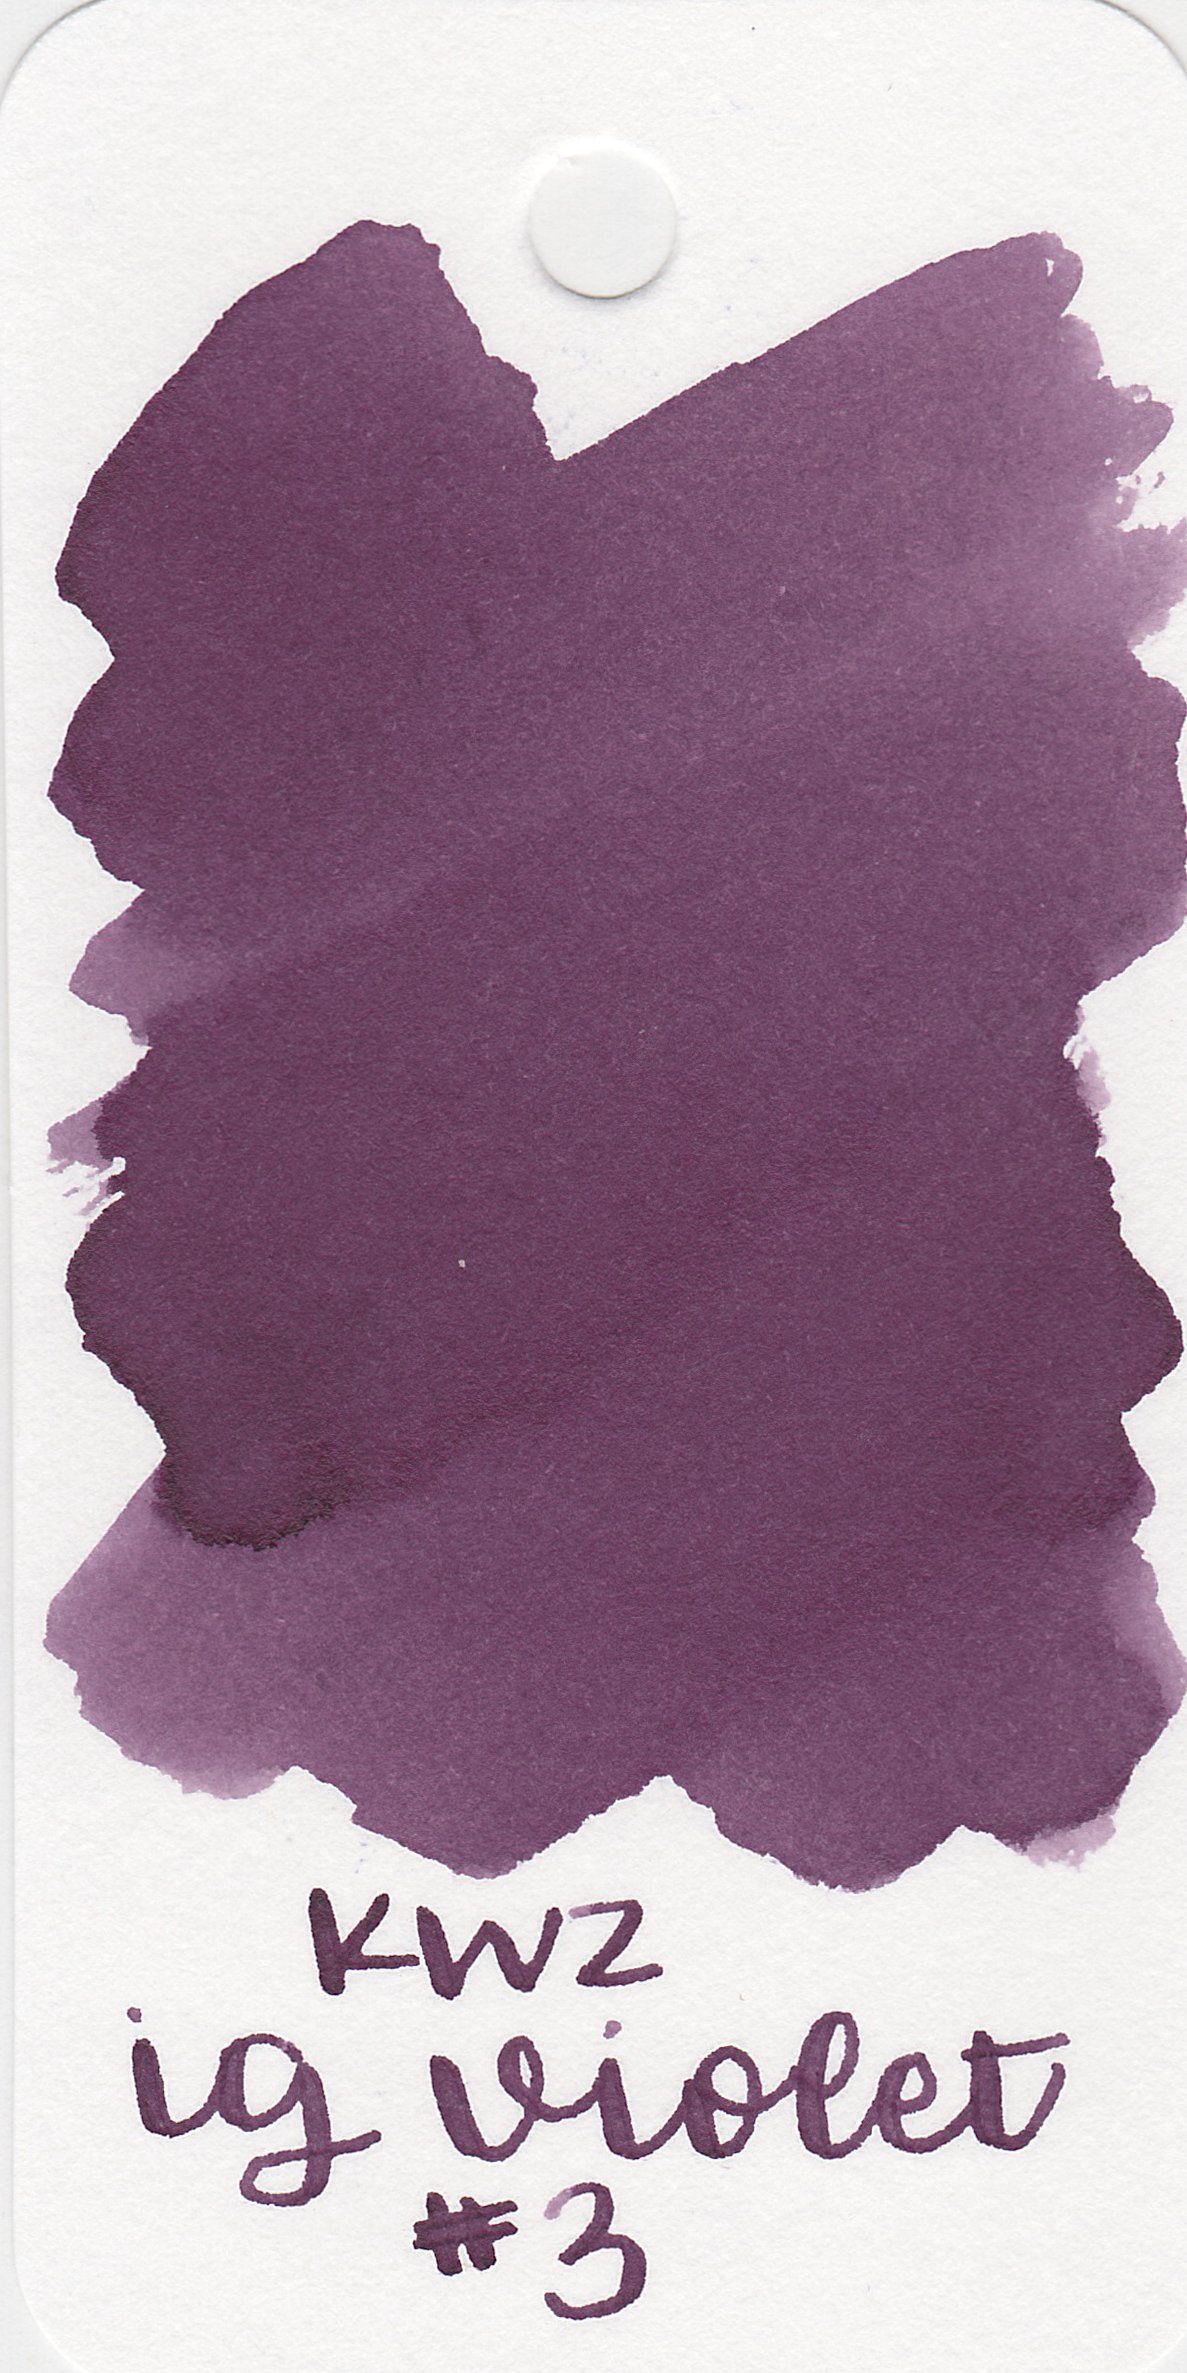 kwz-ig-violet-3-1.jpg